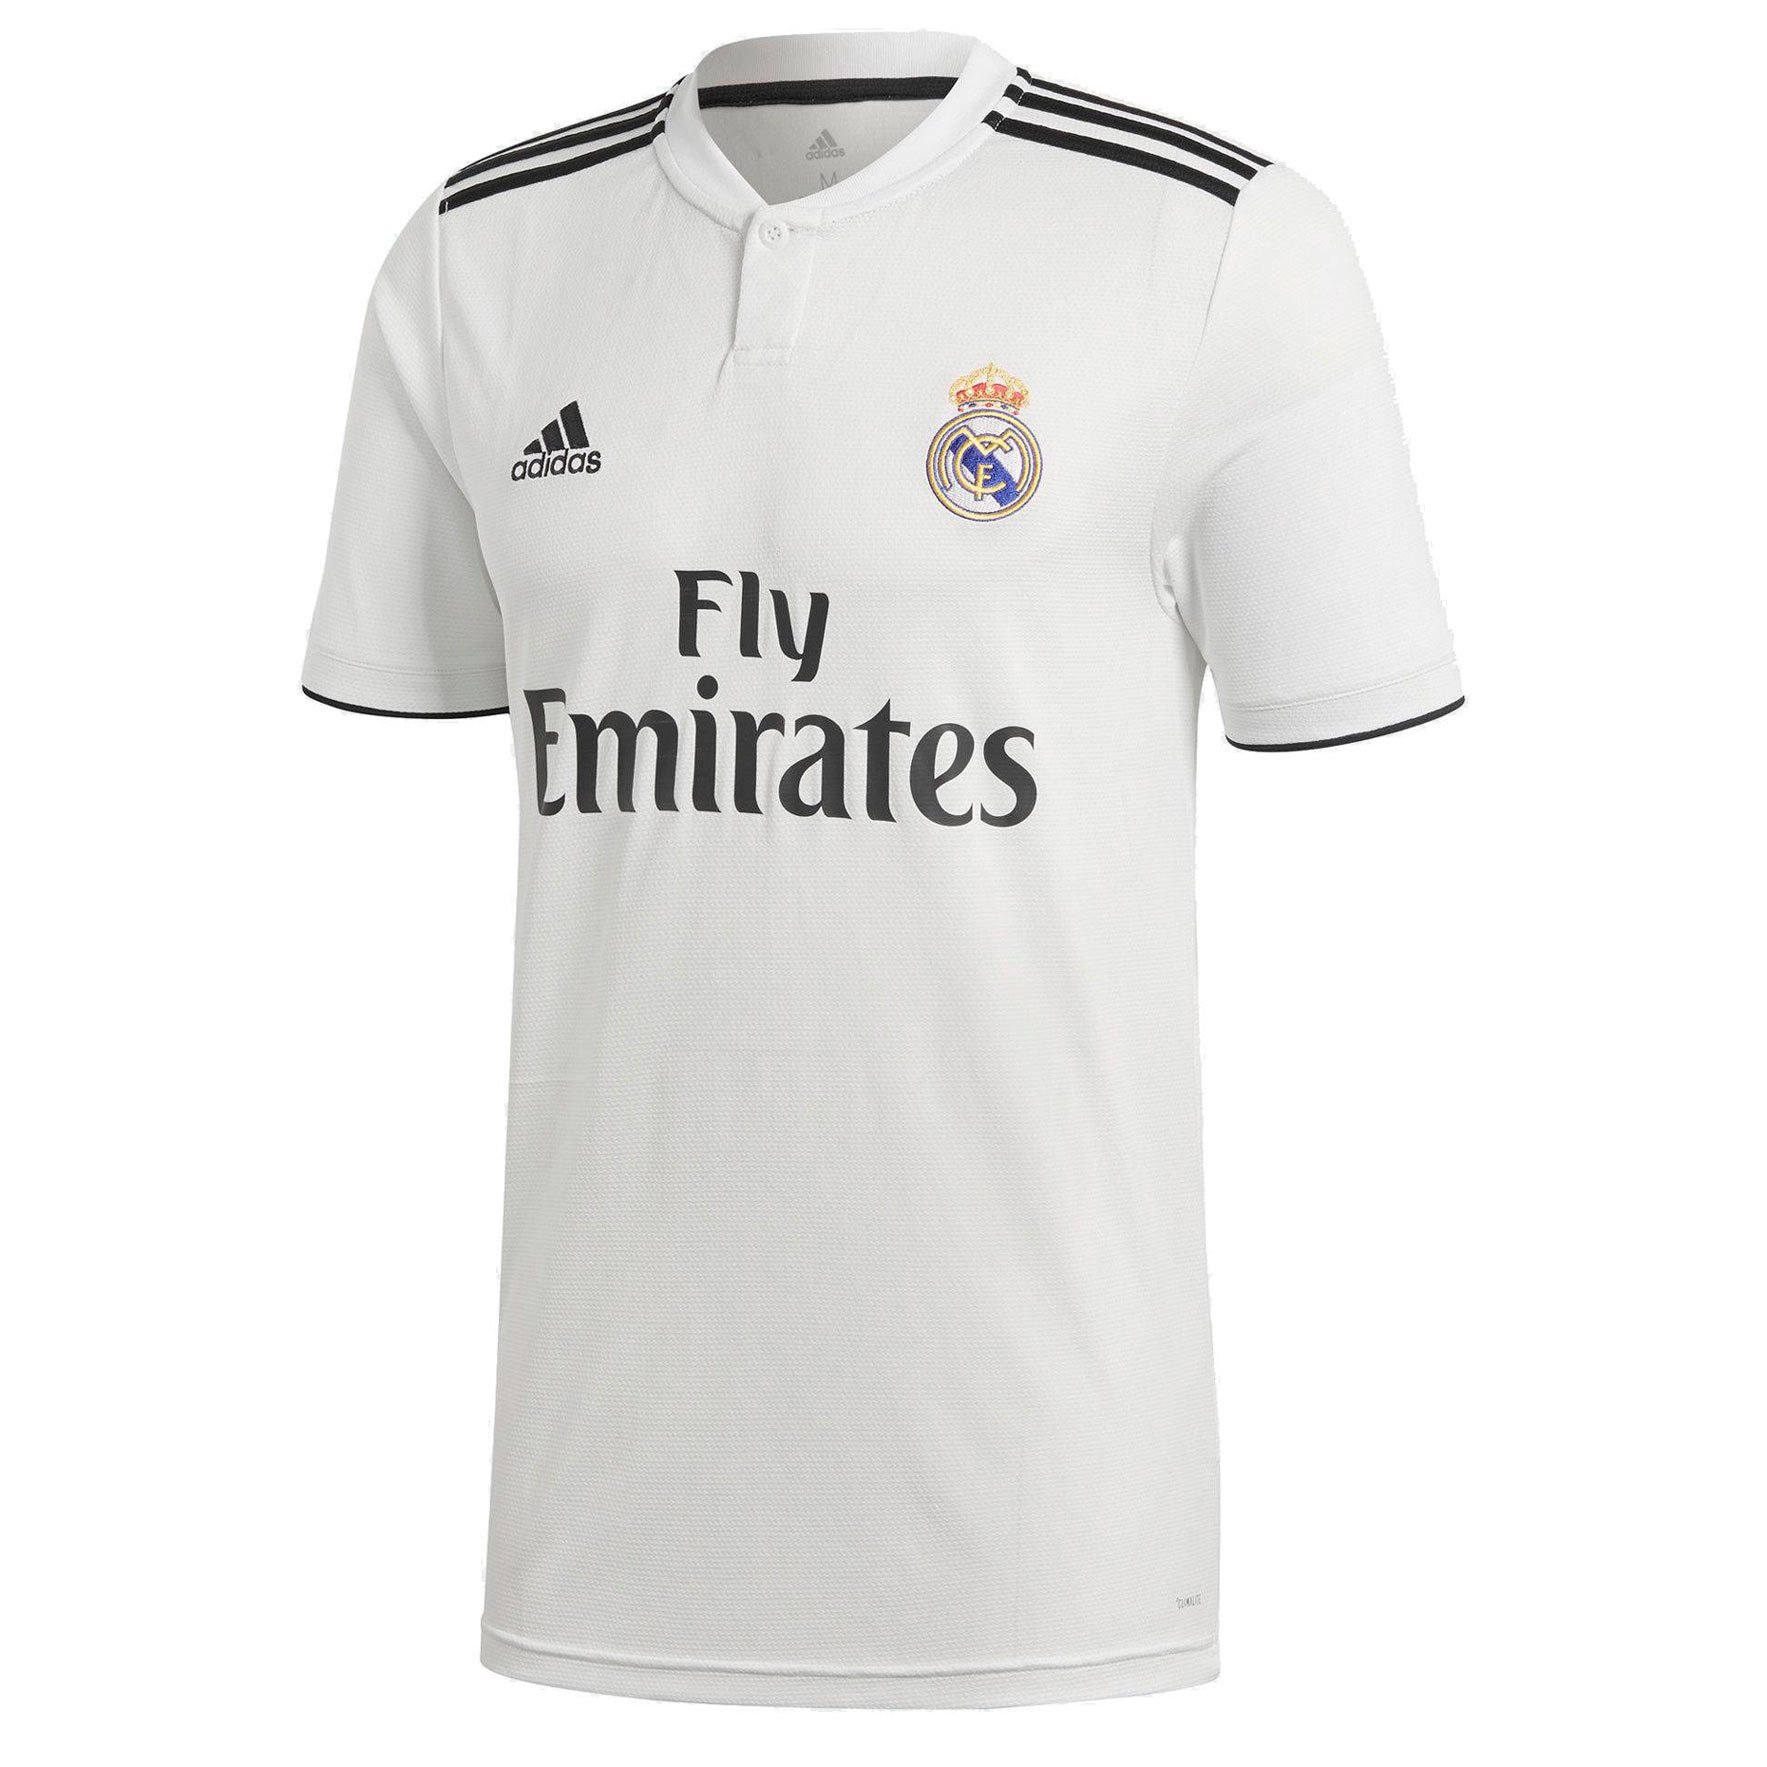 Домашняя детская игровая футболка adidas ФК «Реал Мадрид» 2018/19